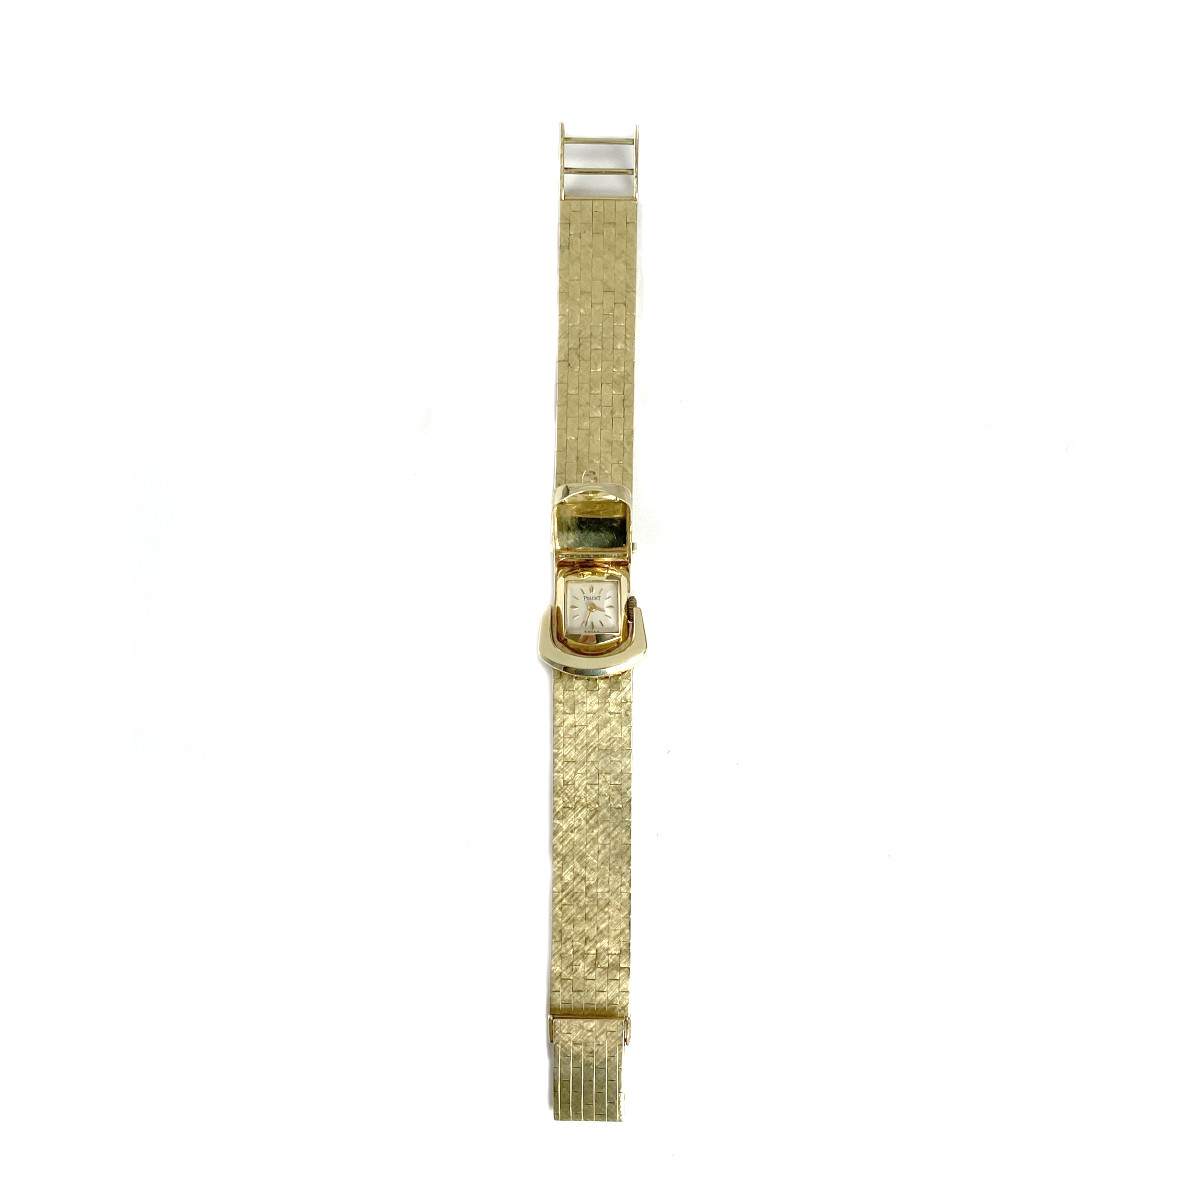 Montre d'occasion bracelet Piaget or 585 jaune 17 cm - vue 2